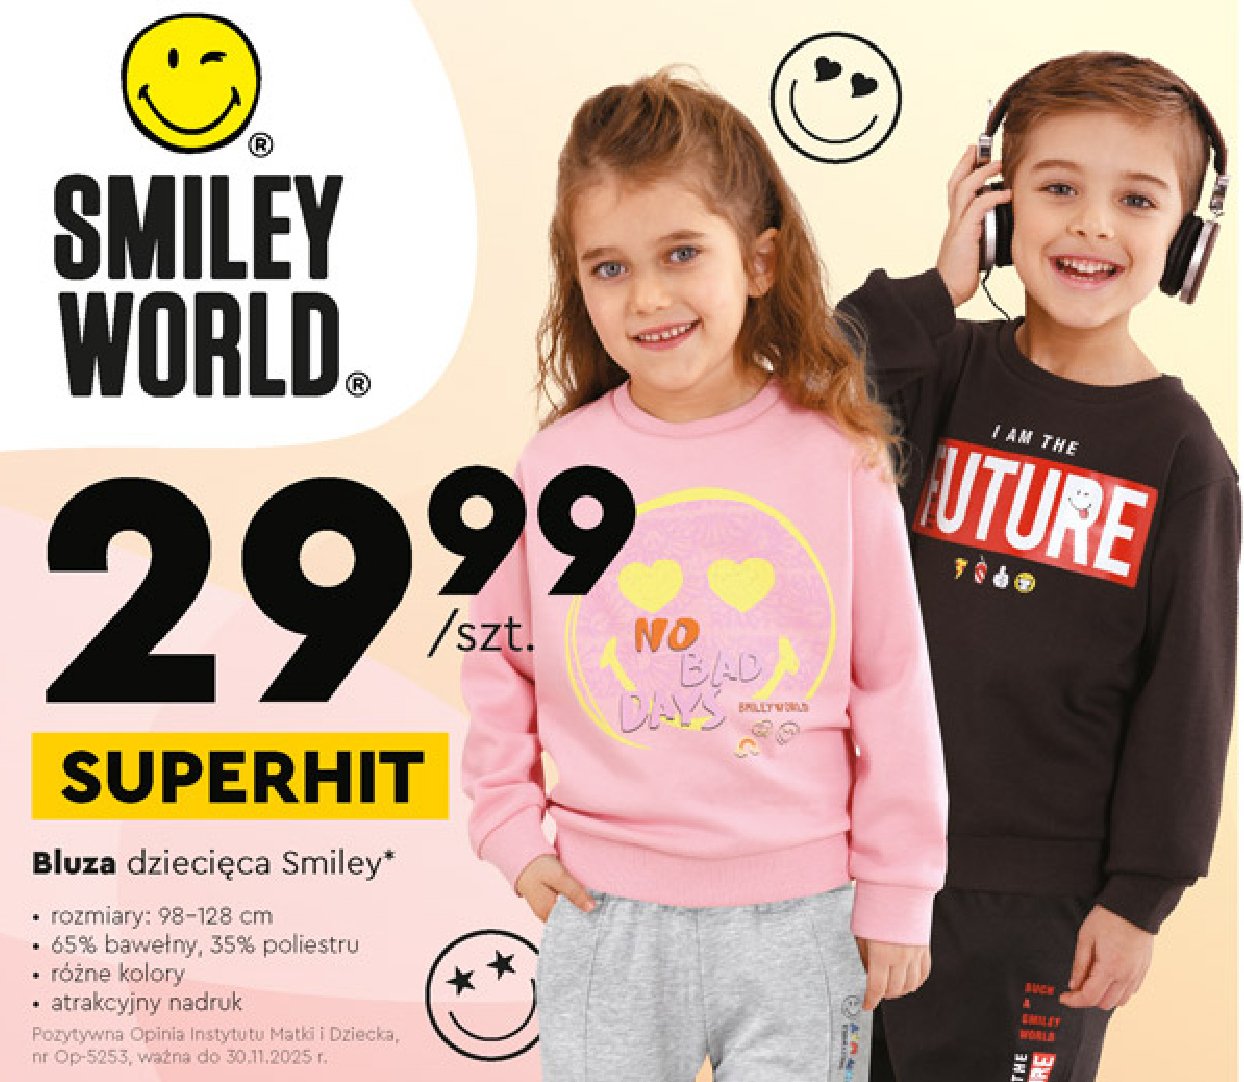 Bluza dziecięca 98-128 cm SMILEY WORLD promocja